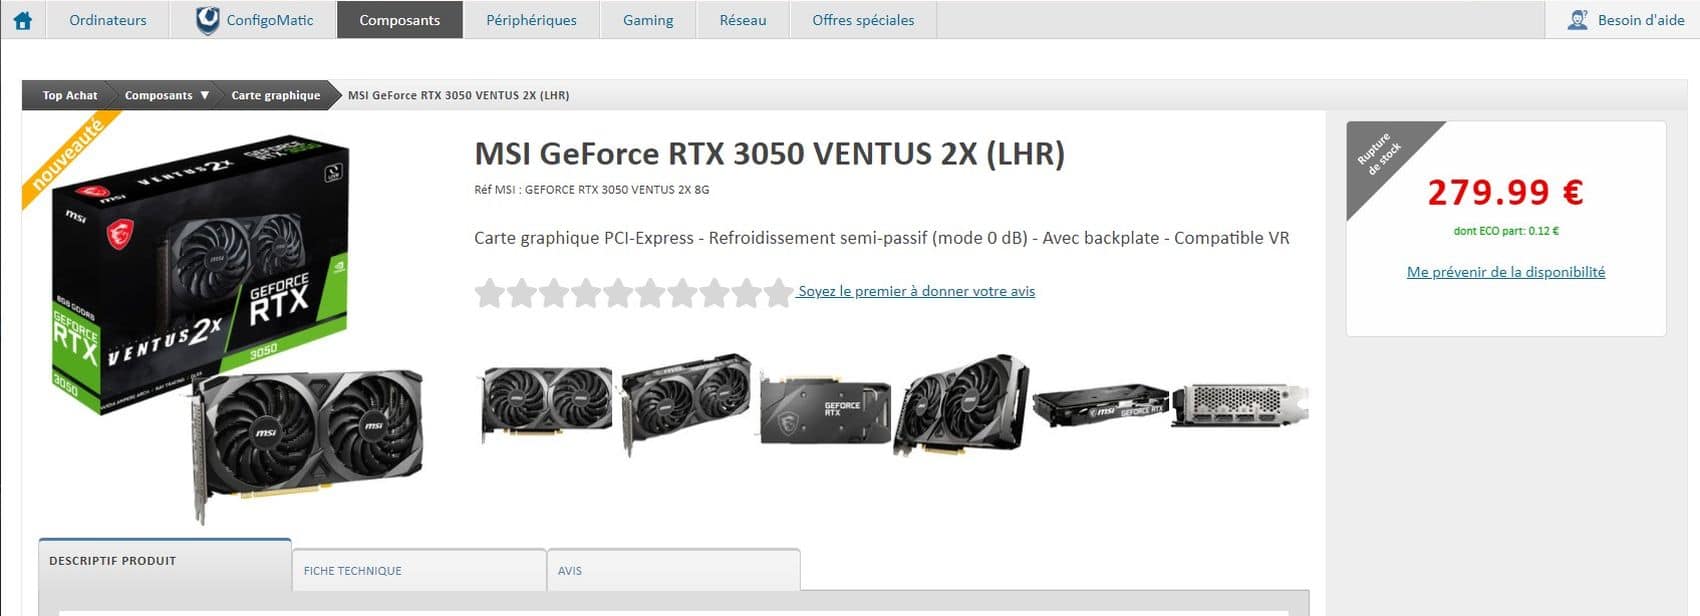 Nvidia GeForce RTX 3050 : meilleur prix, fiche technique et